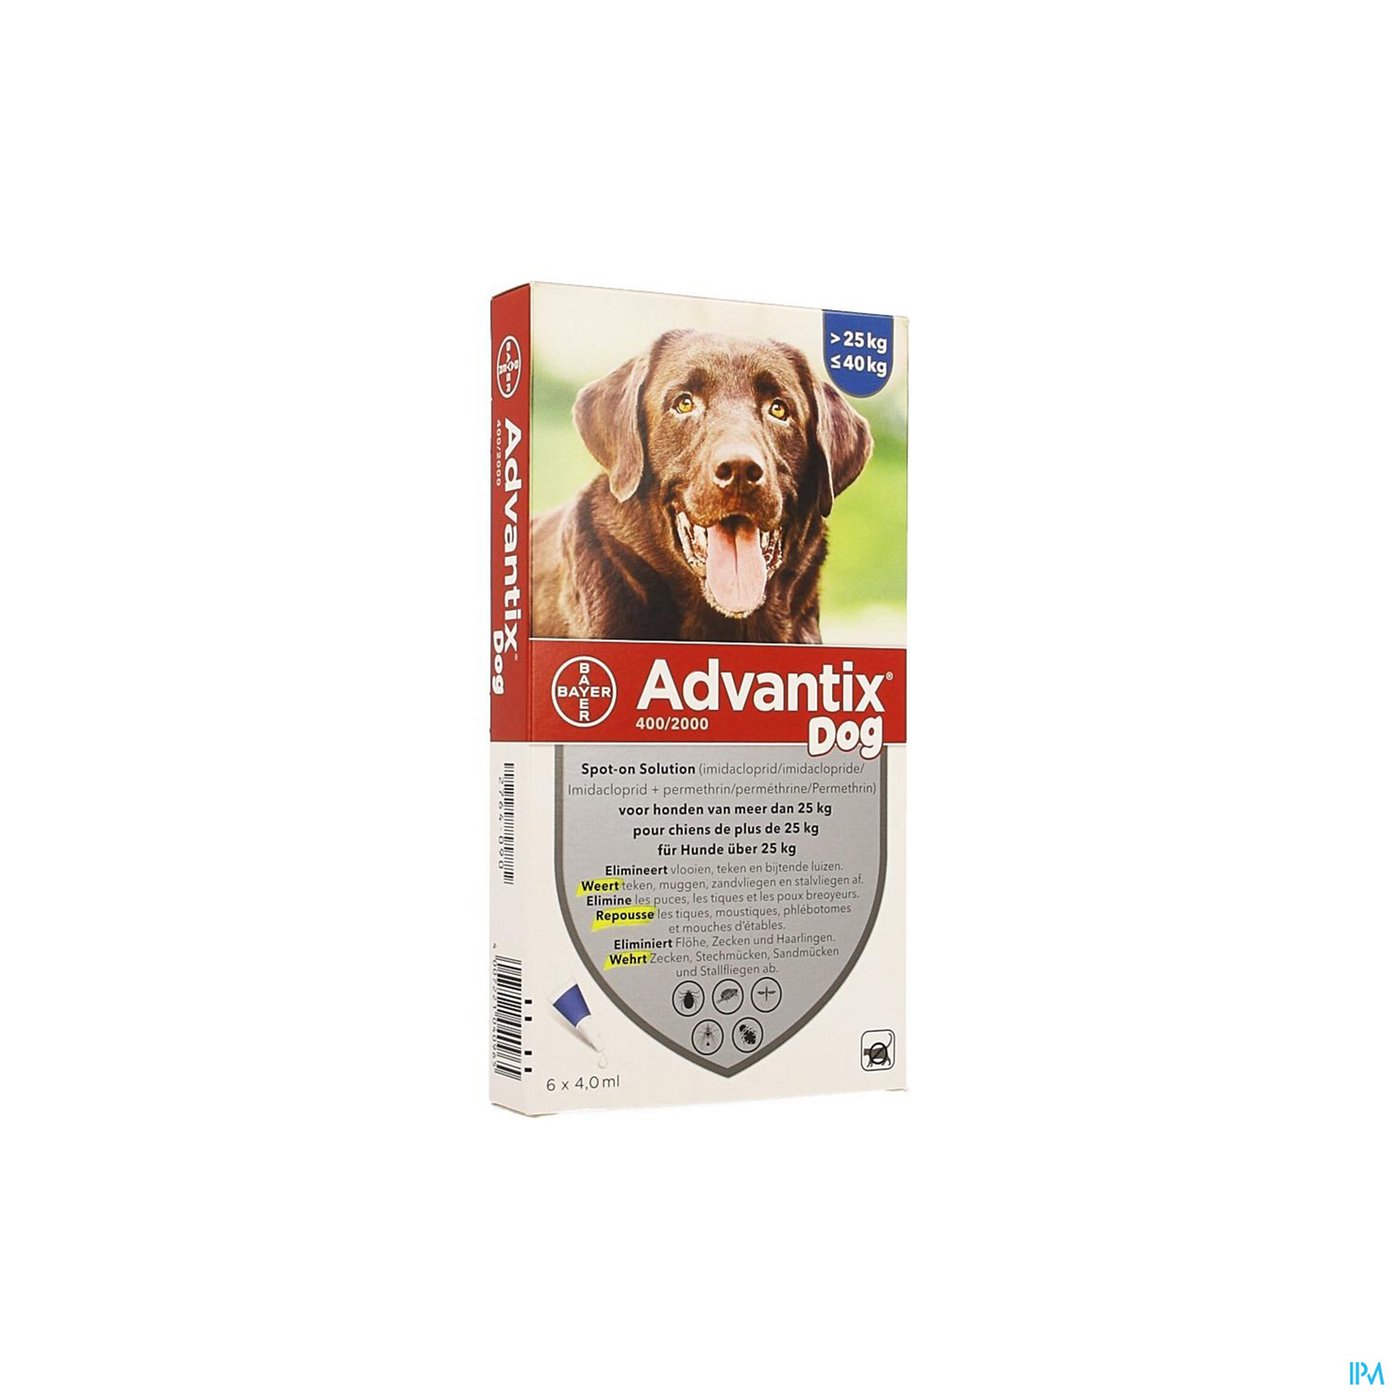 Advantix 400/2000 Honden 25<40kg Fl 6x4,0ml packshot